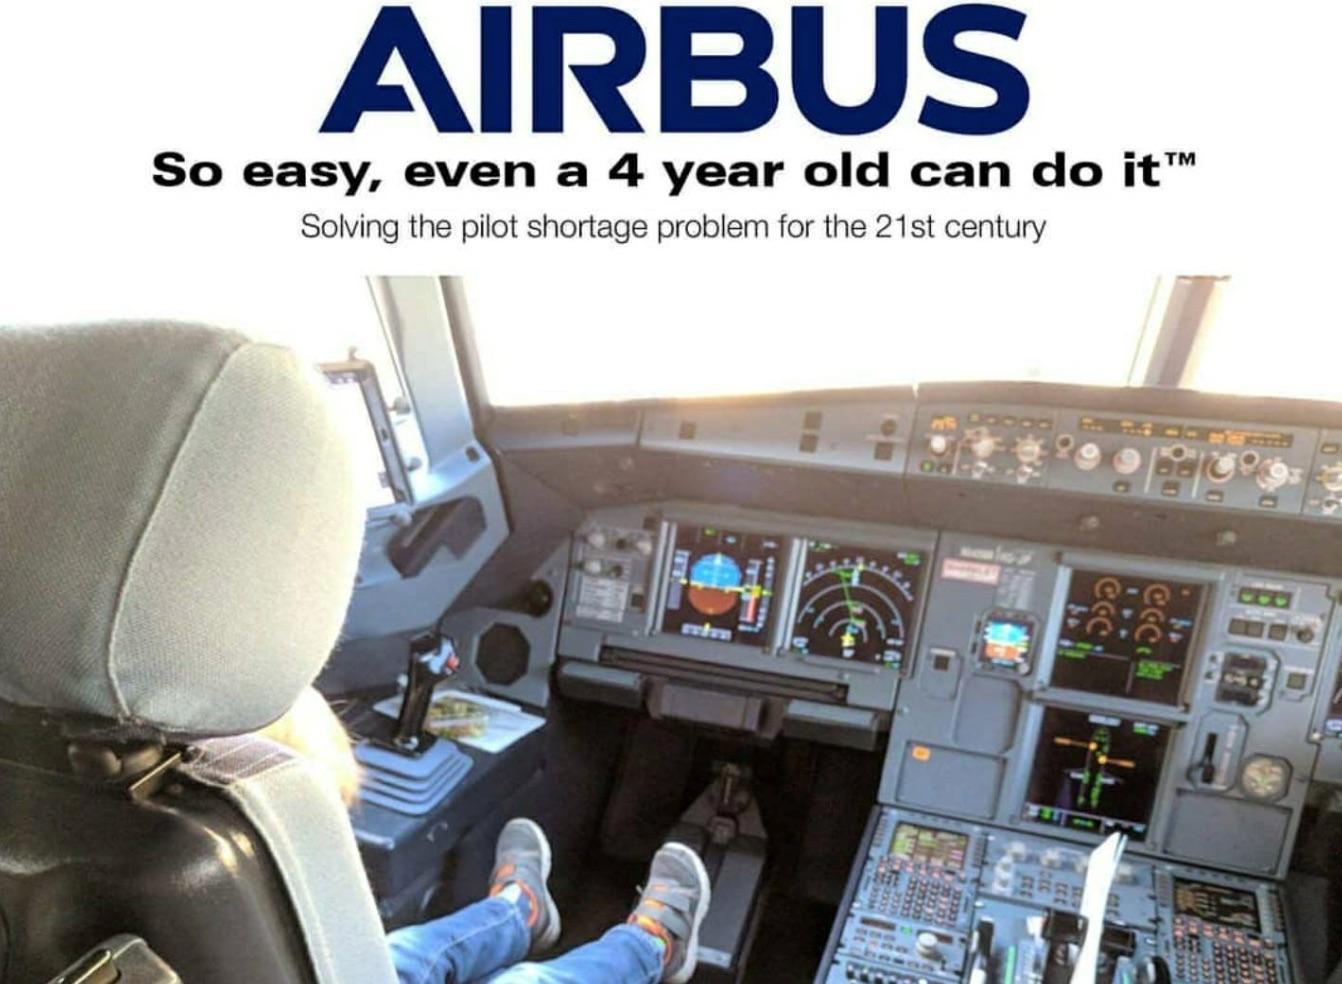 airbus campaign